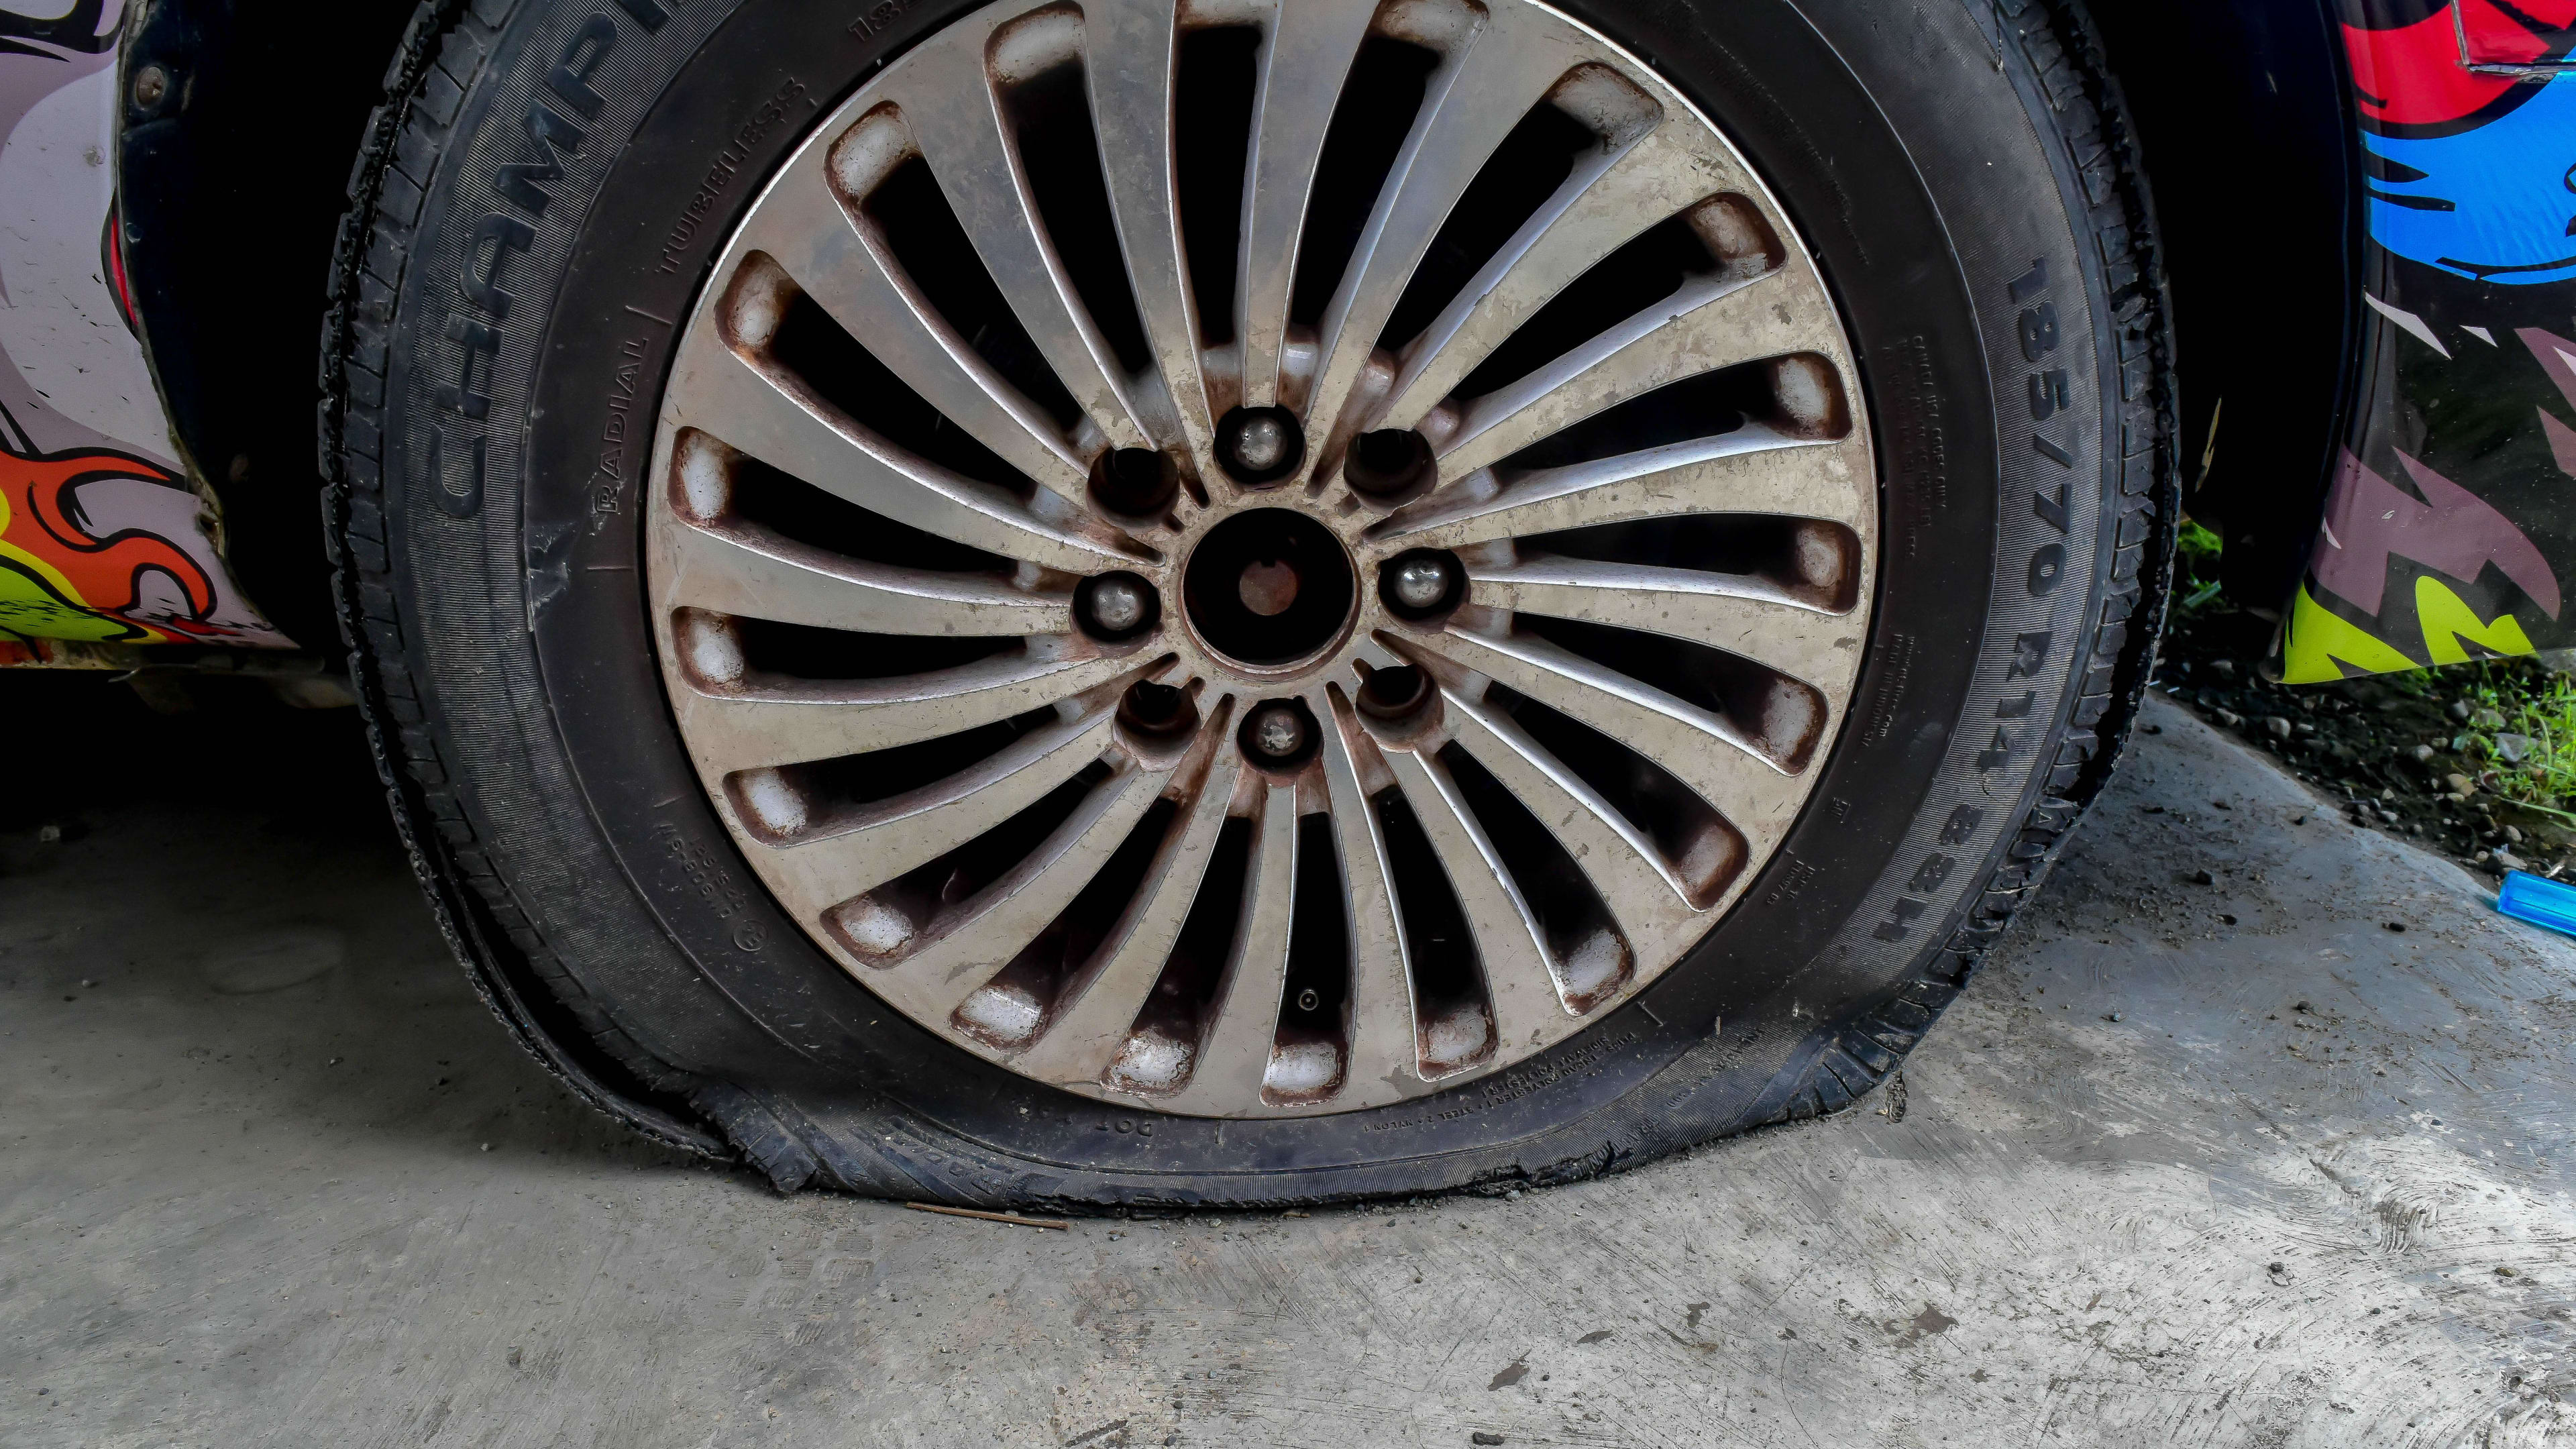 A flat tire on a passenger car with a unique paint job.